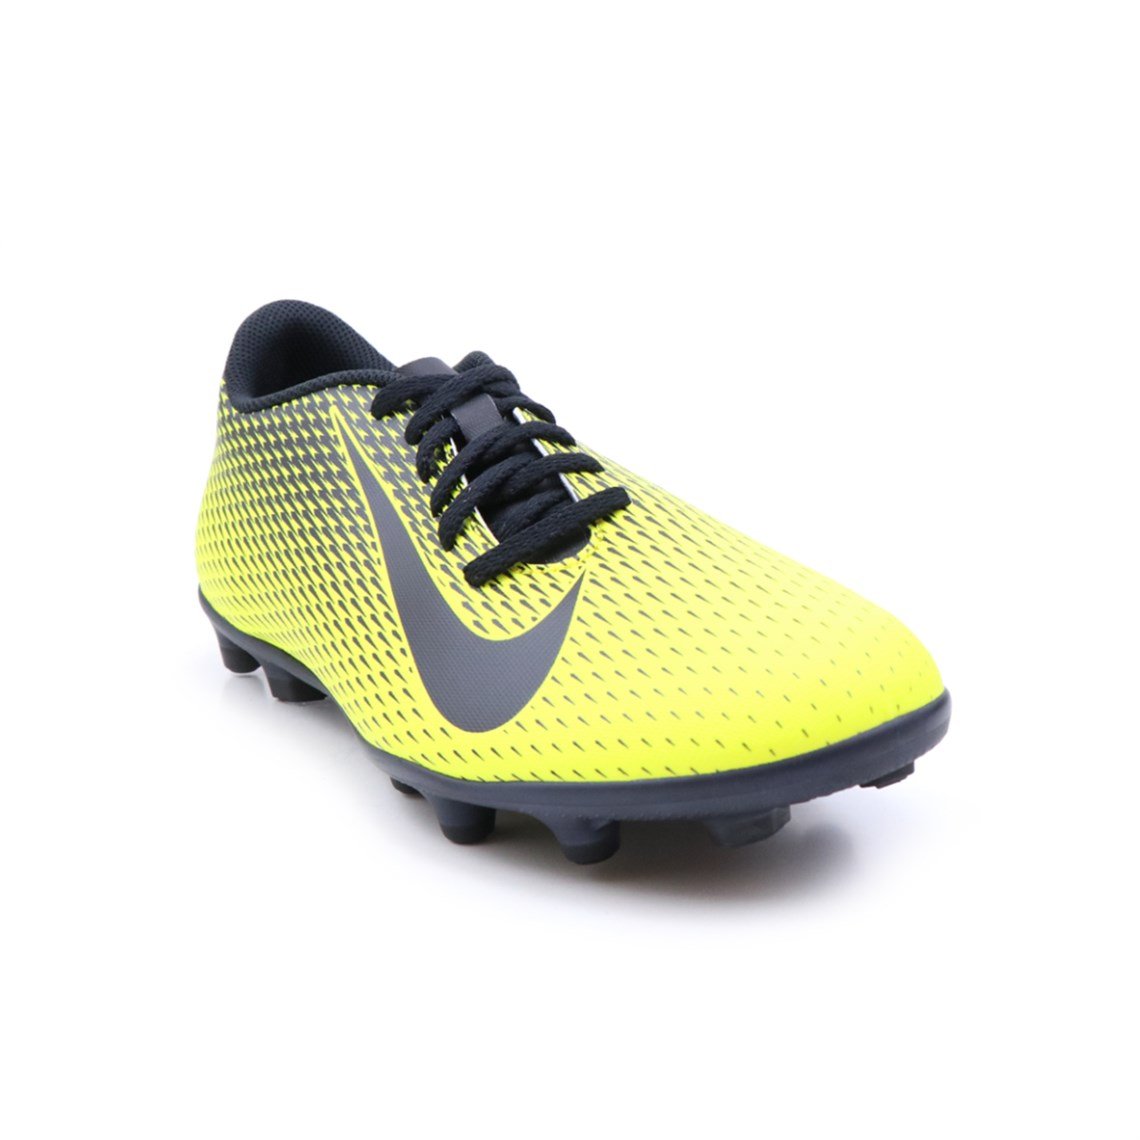 Nike Halı Saha Krampon Sarı Siyah Erkek Spor Ayakkabı 844436-701 | Ayakkabı  City